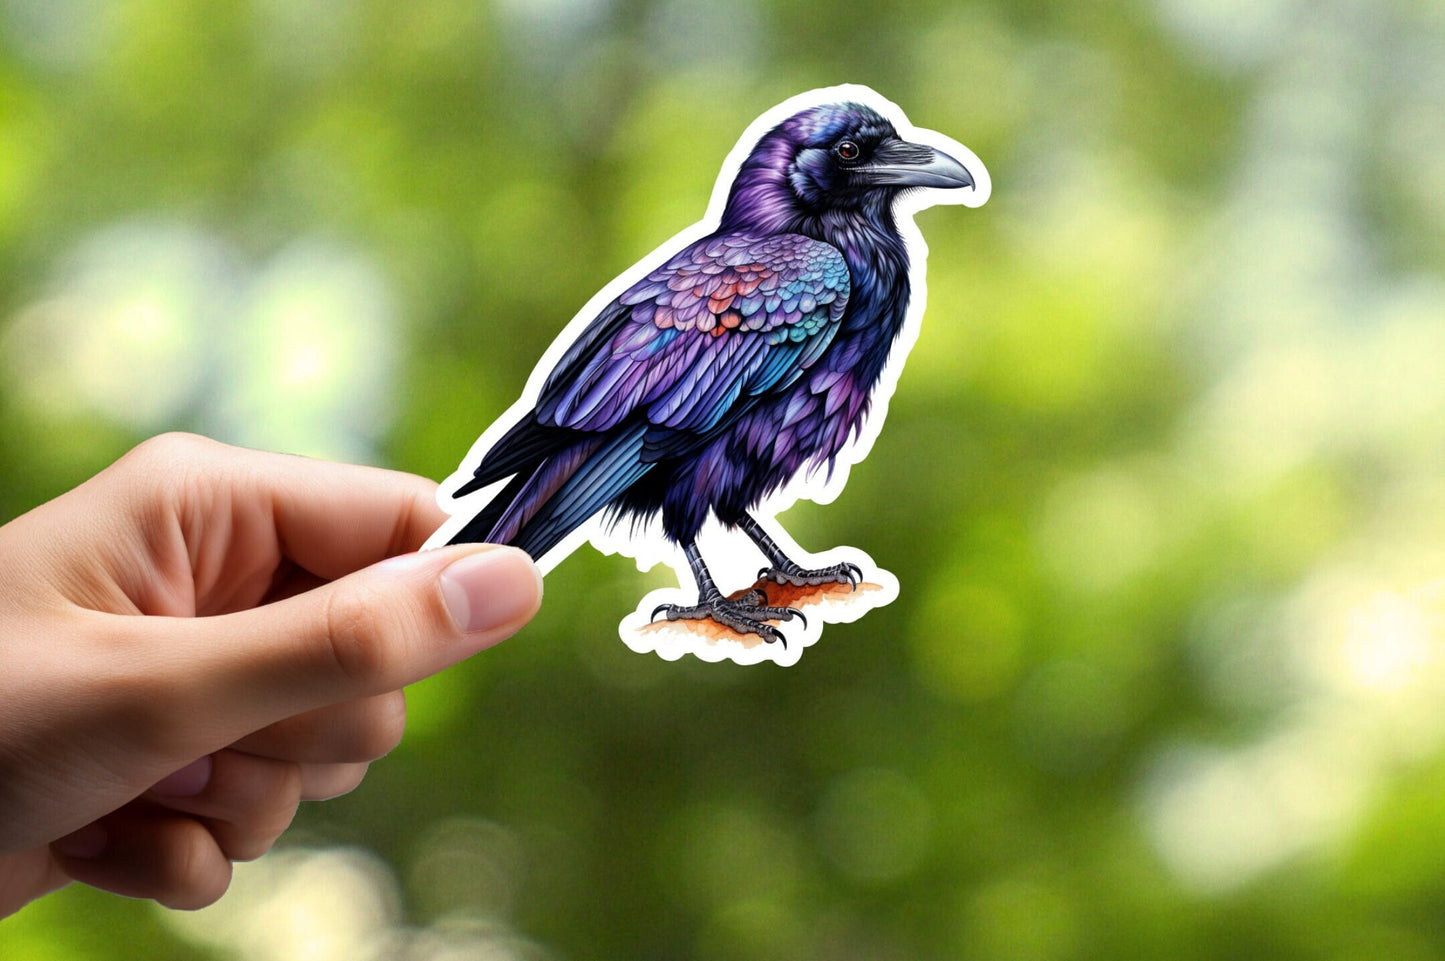 Raven Sticker